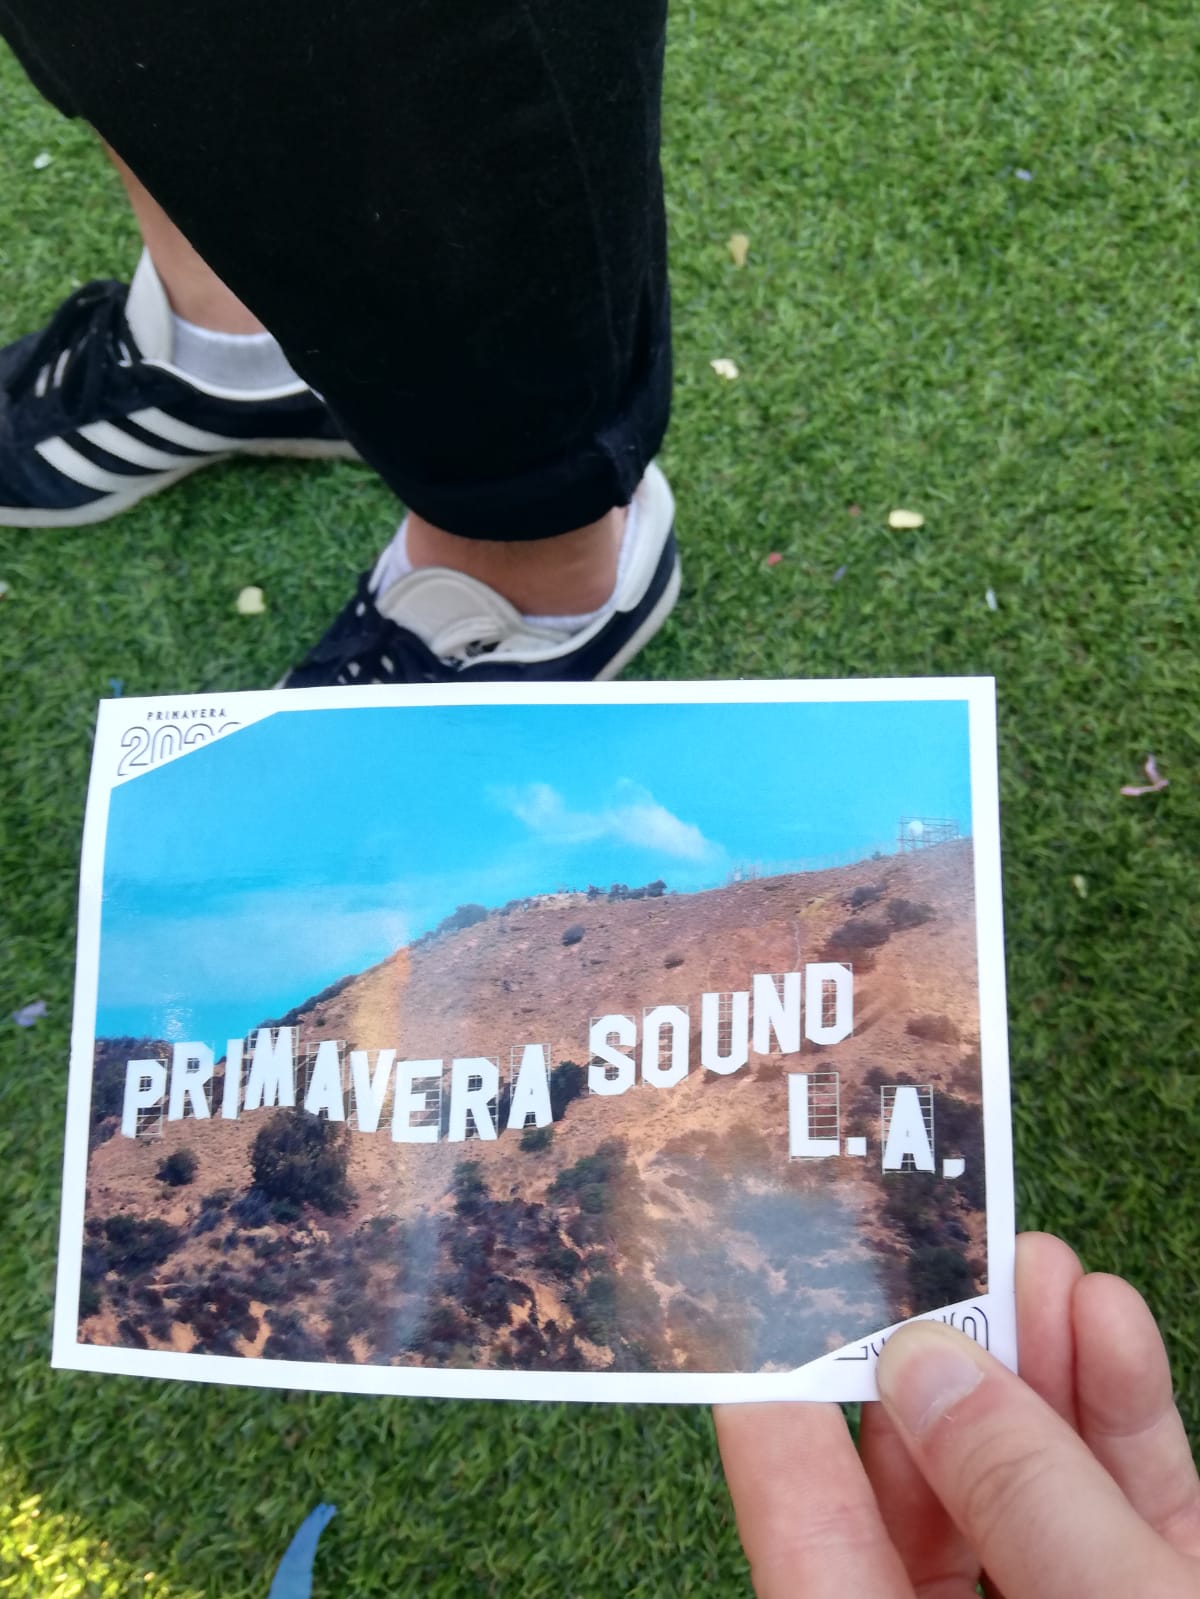 ¡Ah joder! ¡Primavera Sound llega a Los Ángeles en 2020!